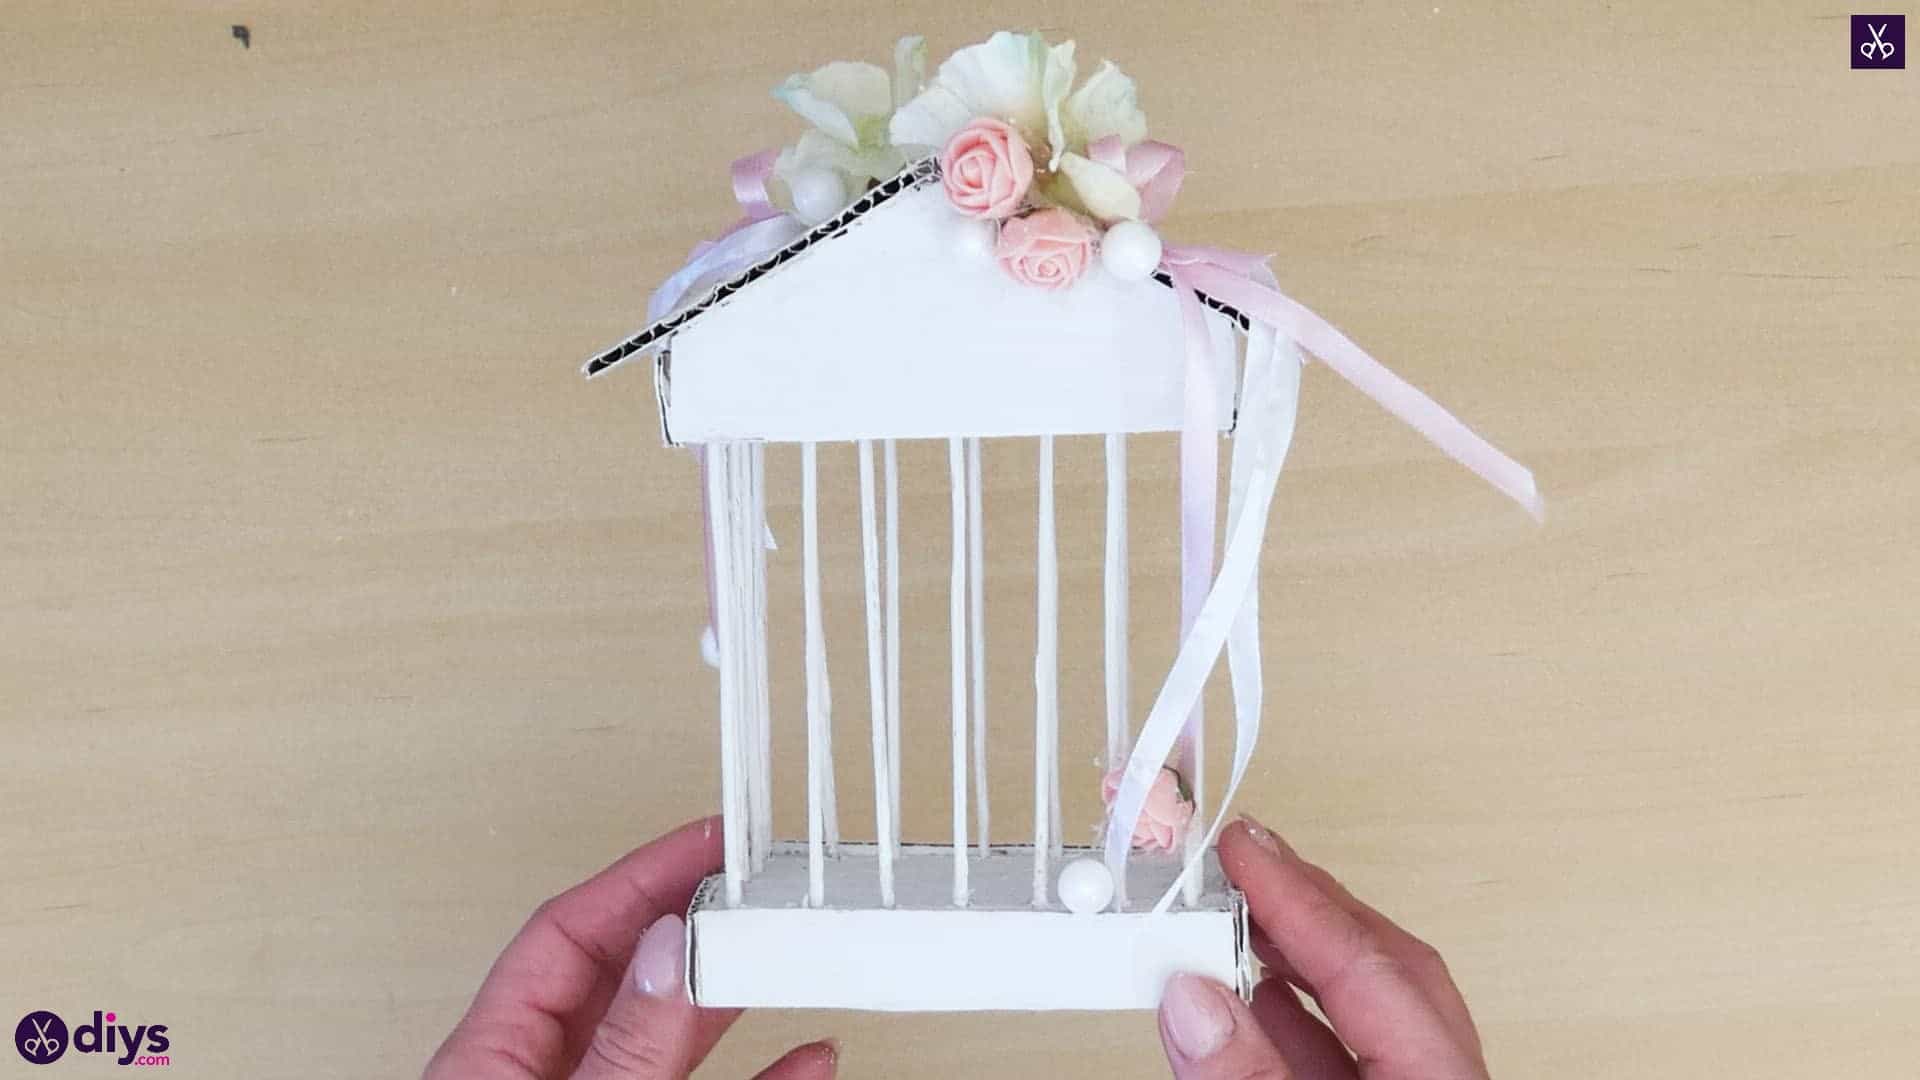 Diy miniature cage centerpiece step 10r